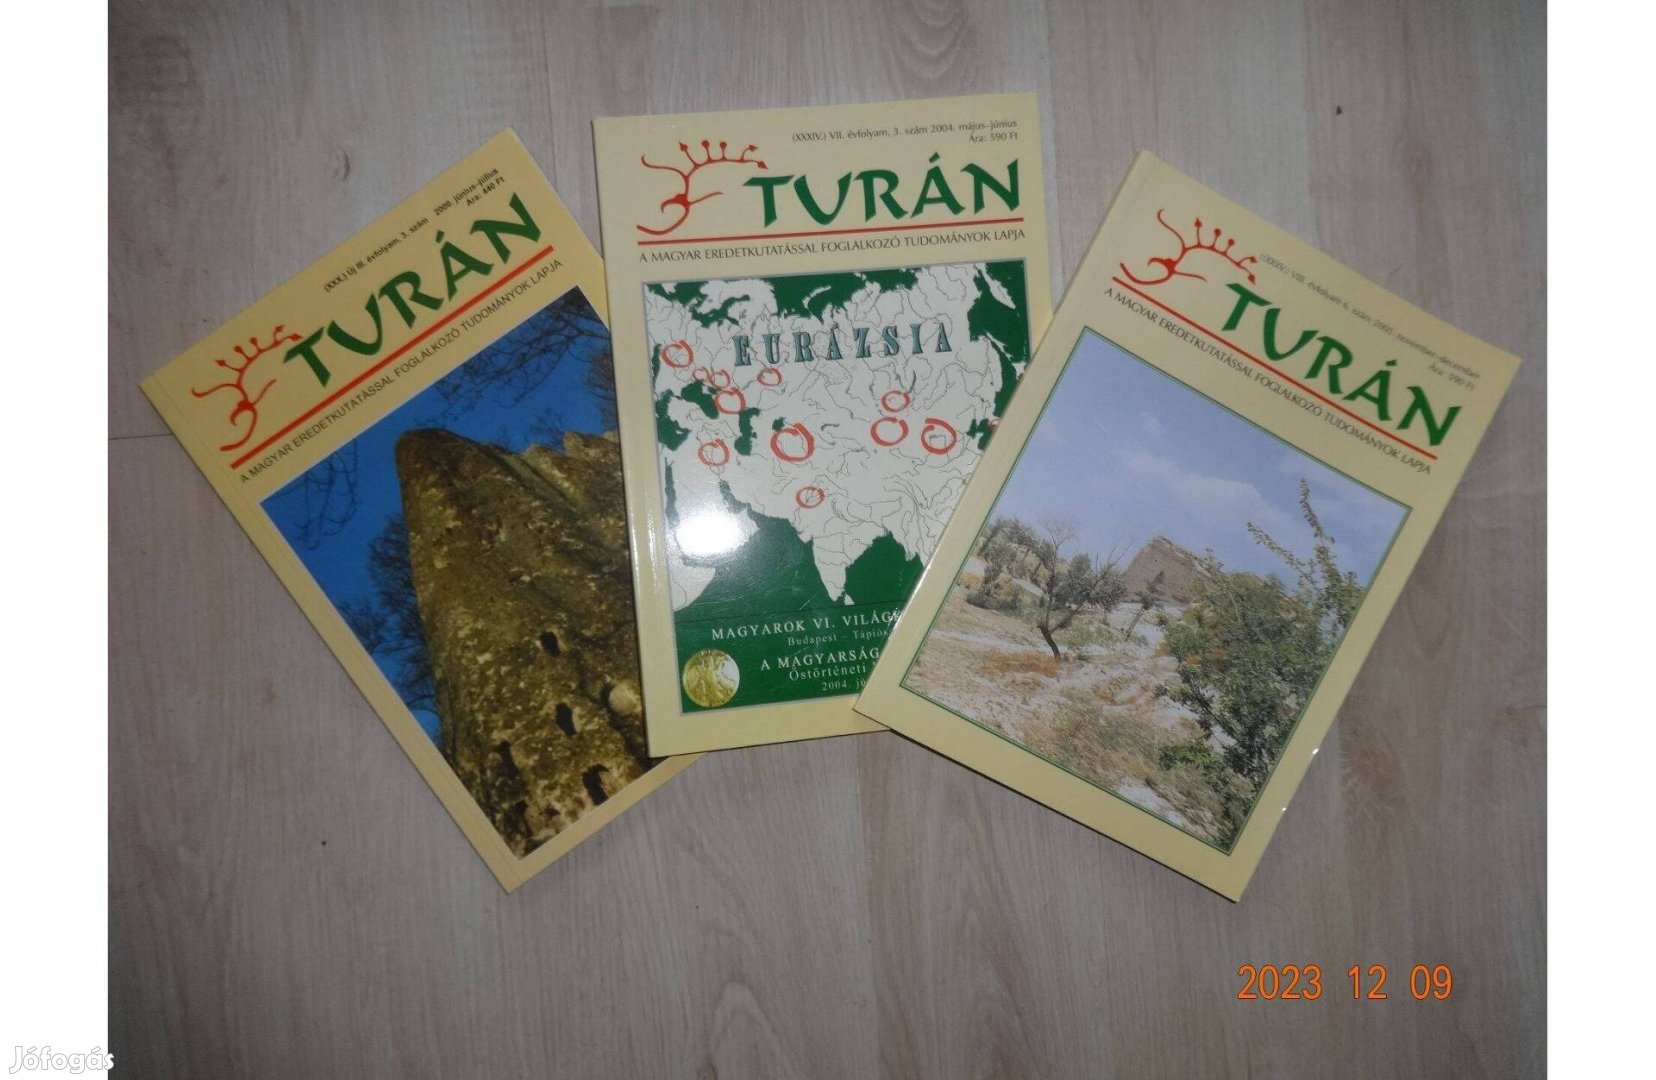 Turán magazin (magyar eredetkutatás) - 3 kötet együtt